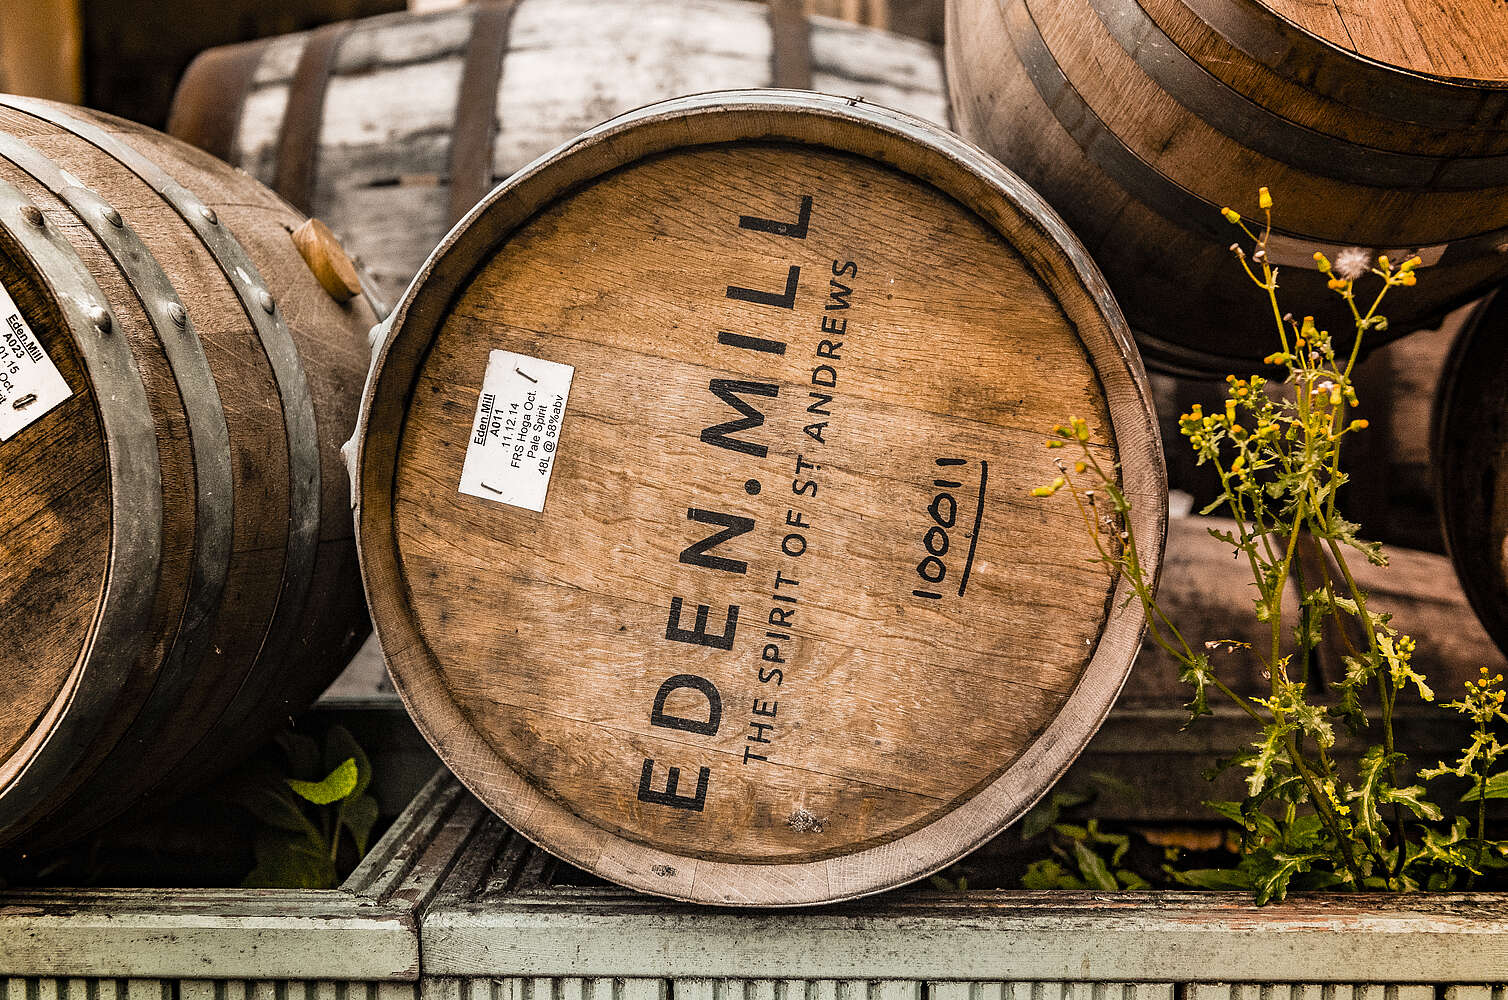 Eden mill barrel